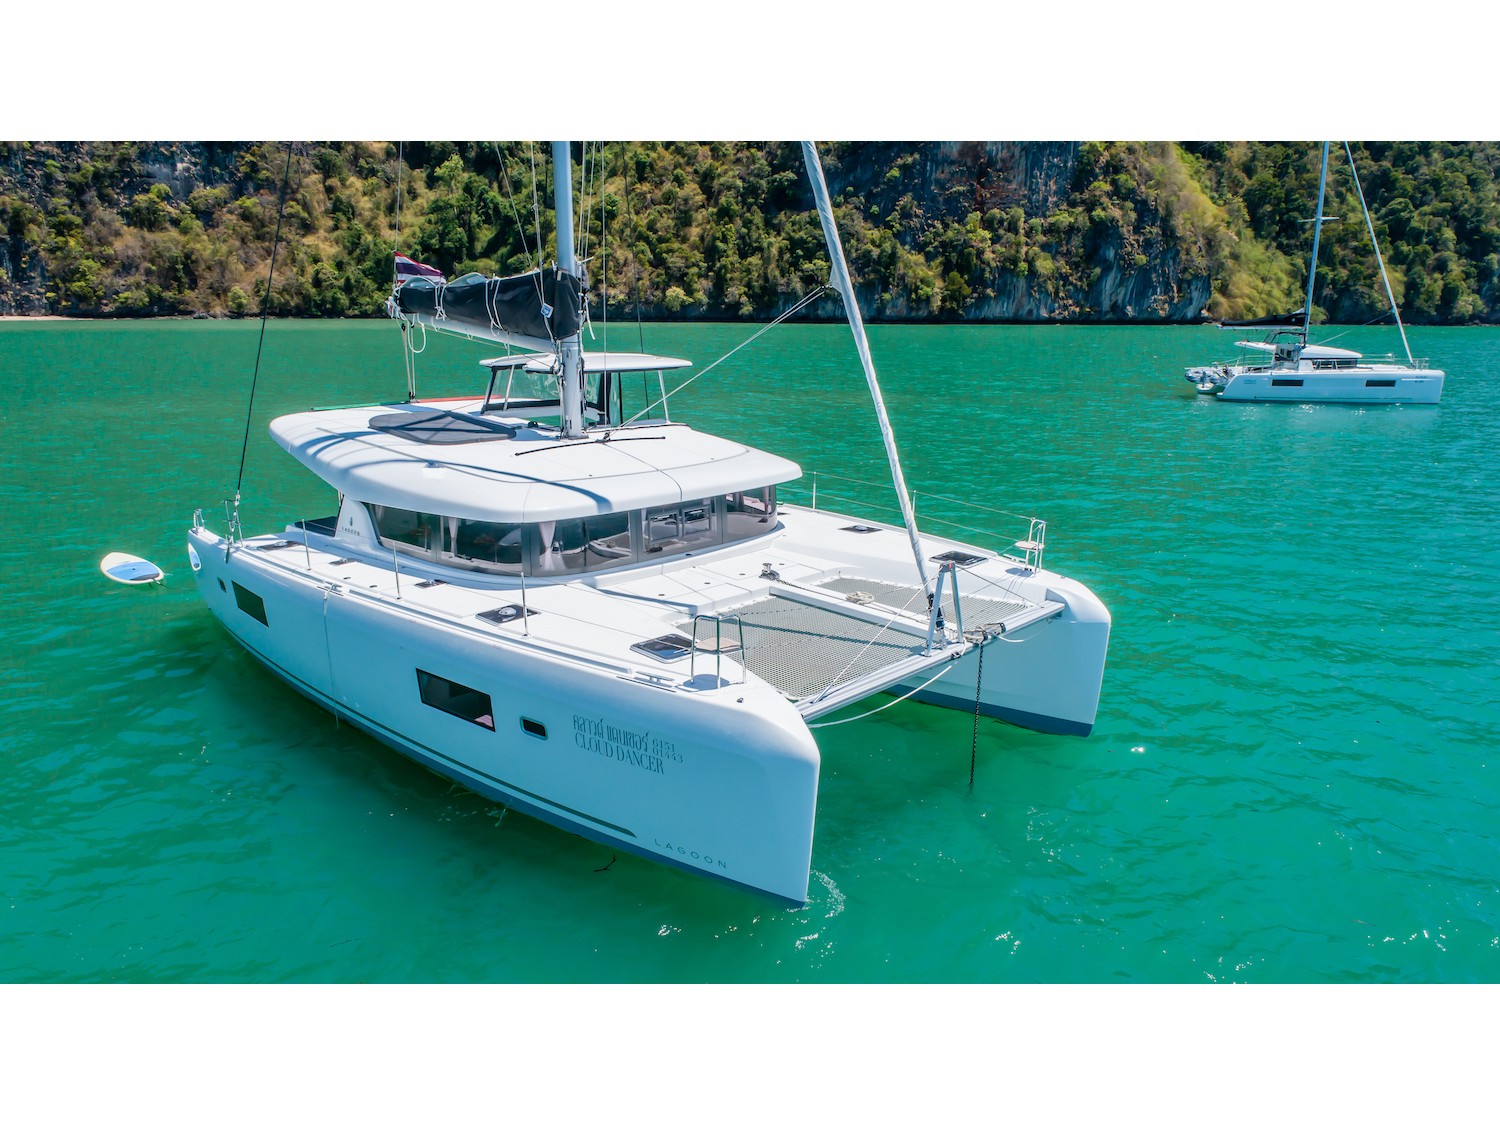 Lagoon 42 - Location de Yachts en Thaïlande & Boat hire in Thailand Phuket Ao Po Grand Marina 2